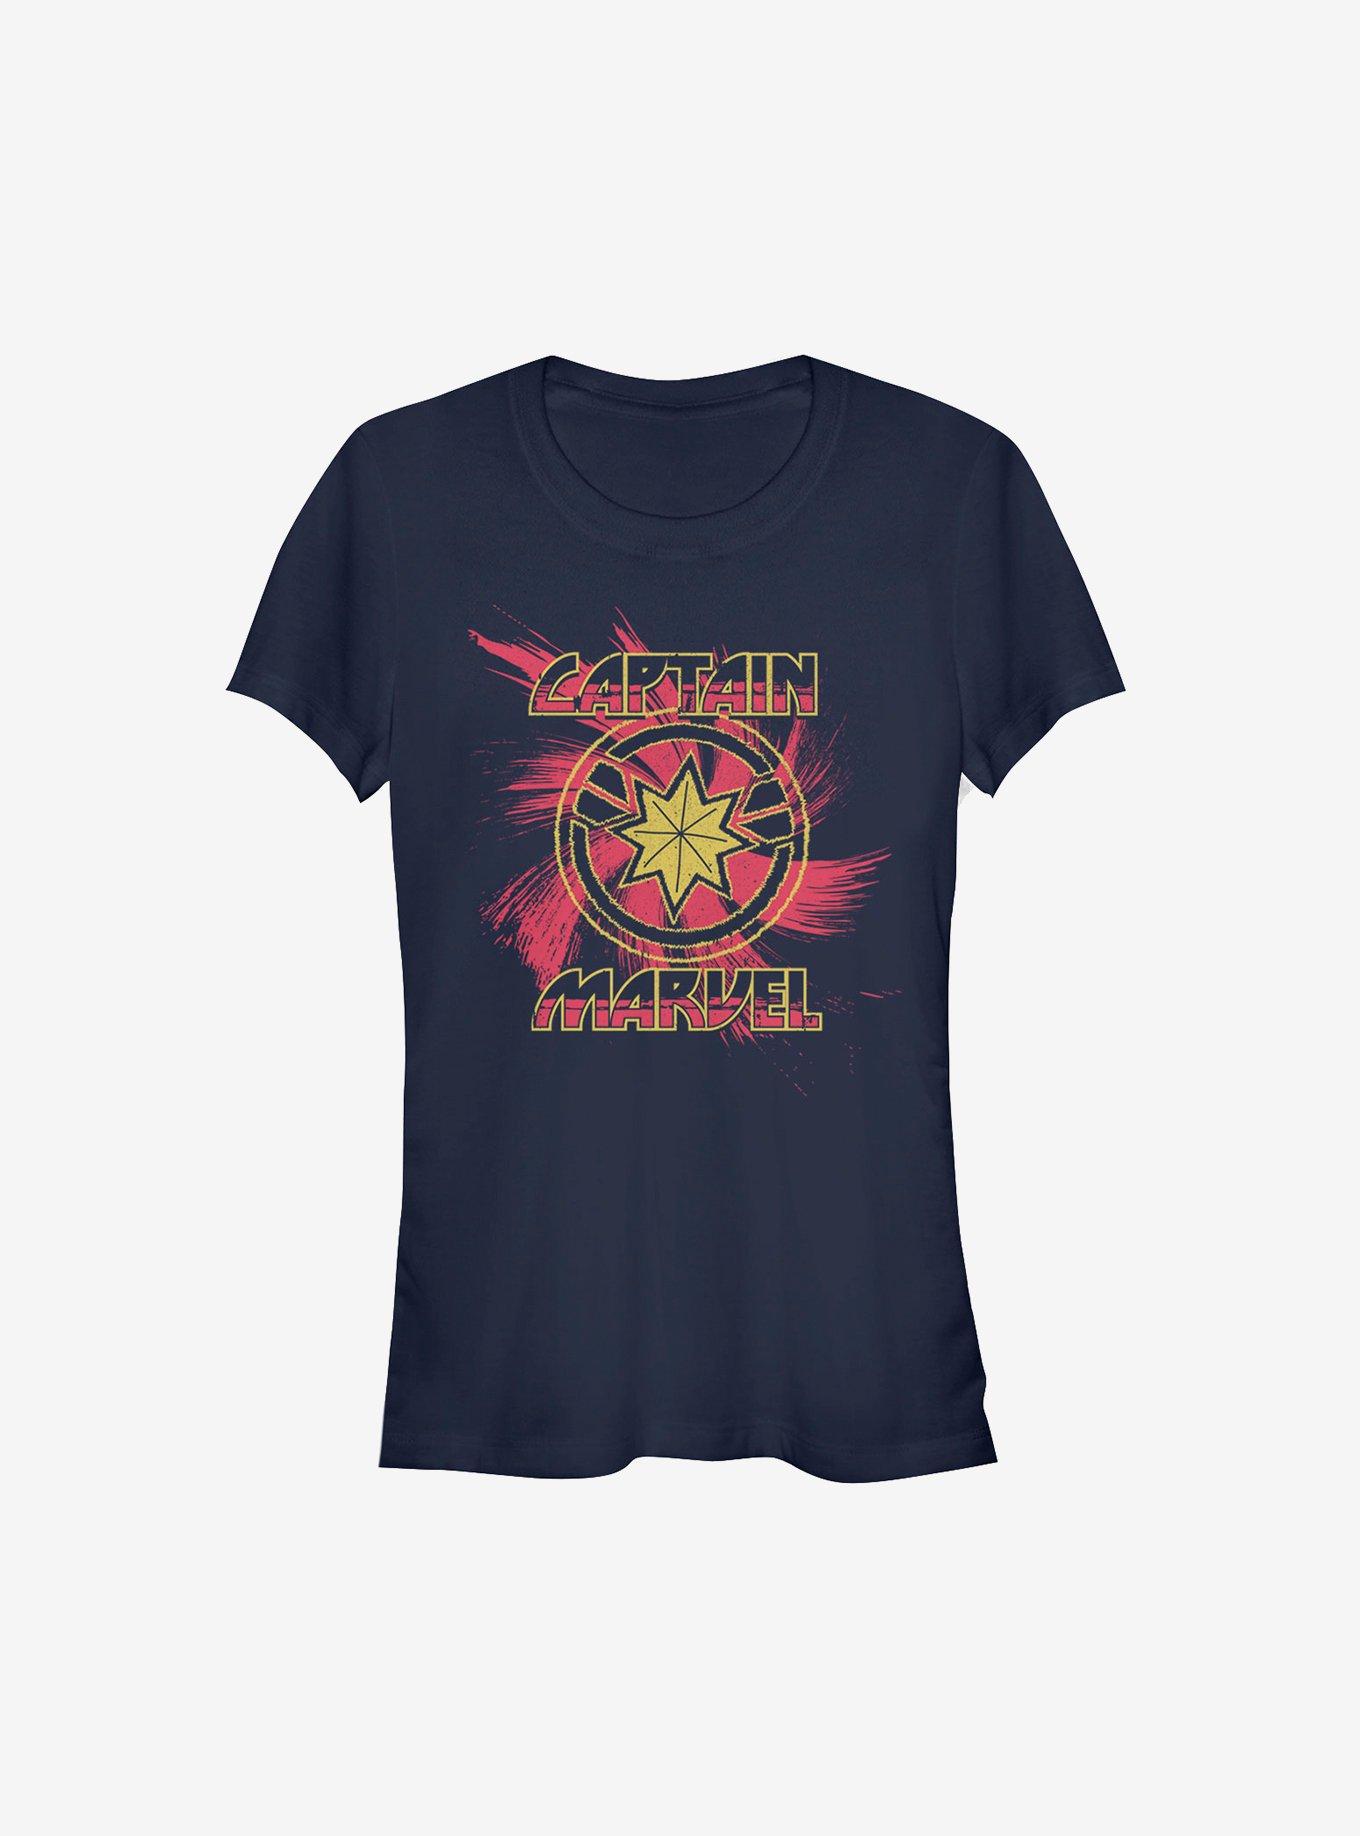 Marvel Captain Marvel Swirl Girls T-Shirt, NAVY, hi-res